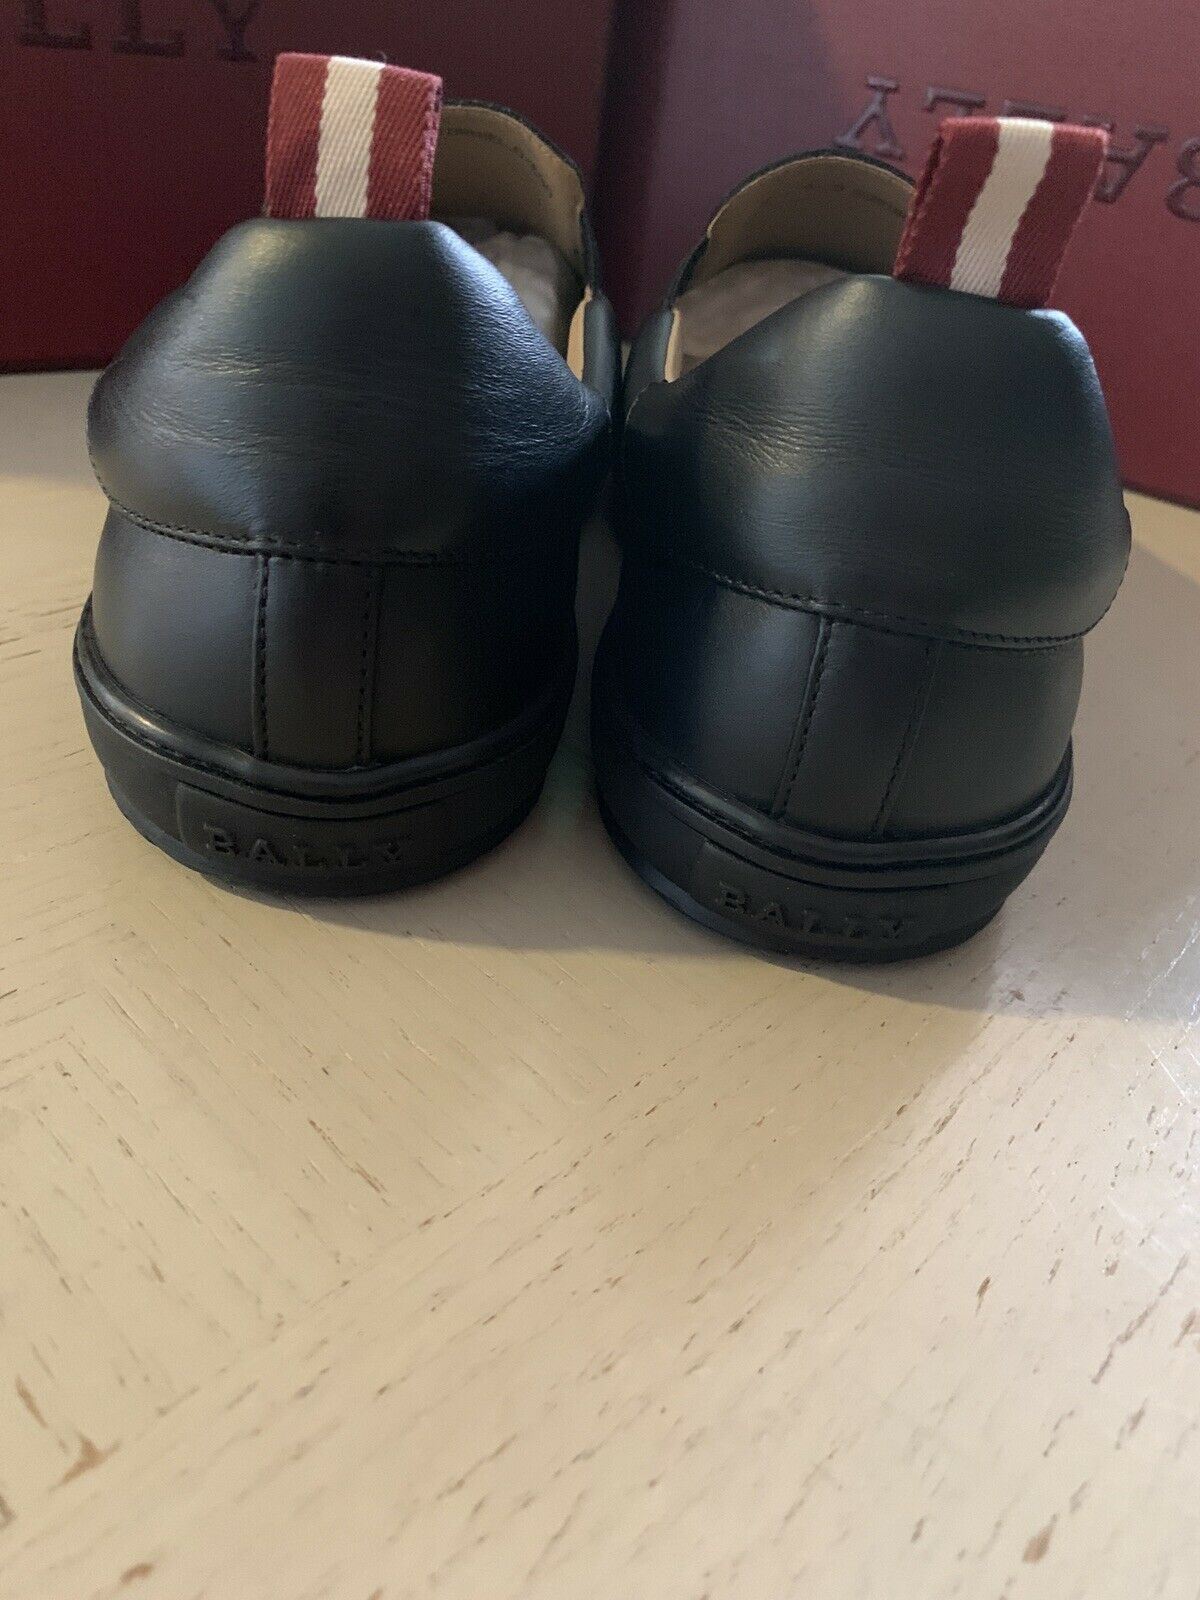 Новые мужские кожаные кроссовки Bally Orniel за 510 долларов США, черные 10,5 США, Швейцария